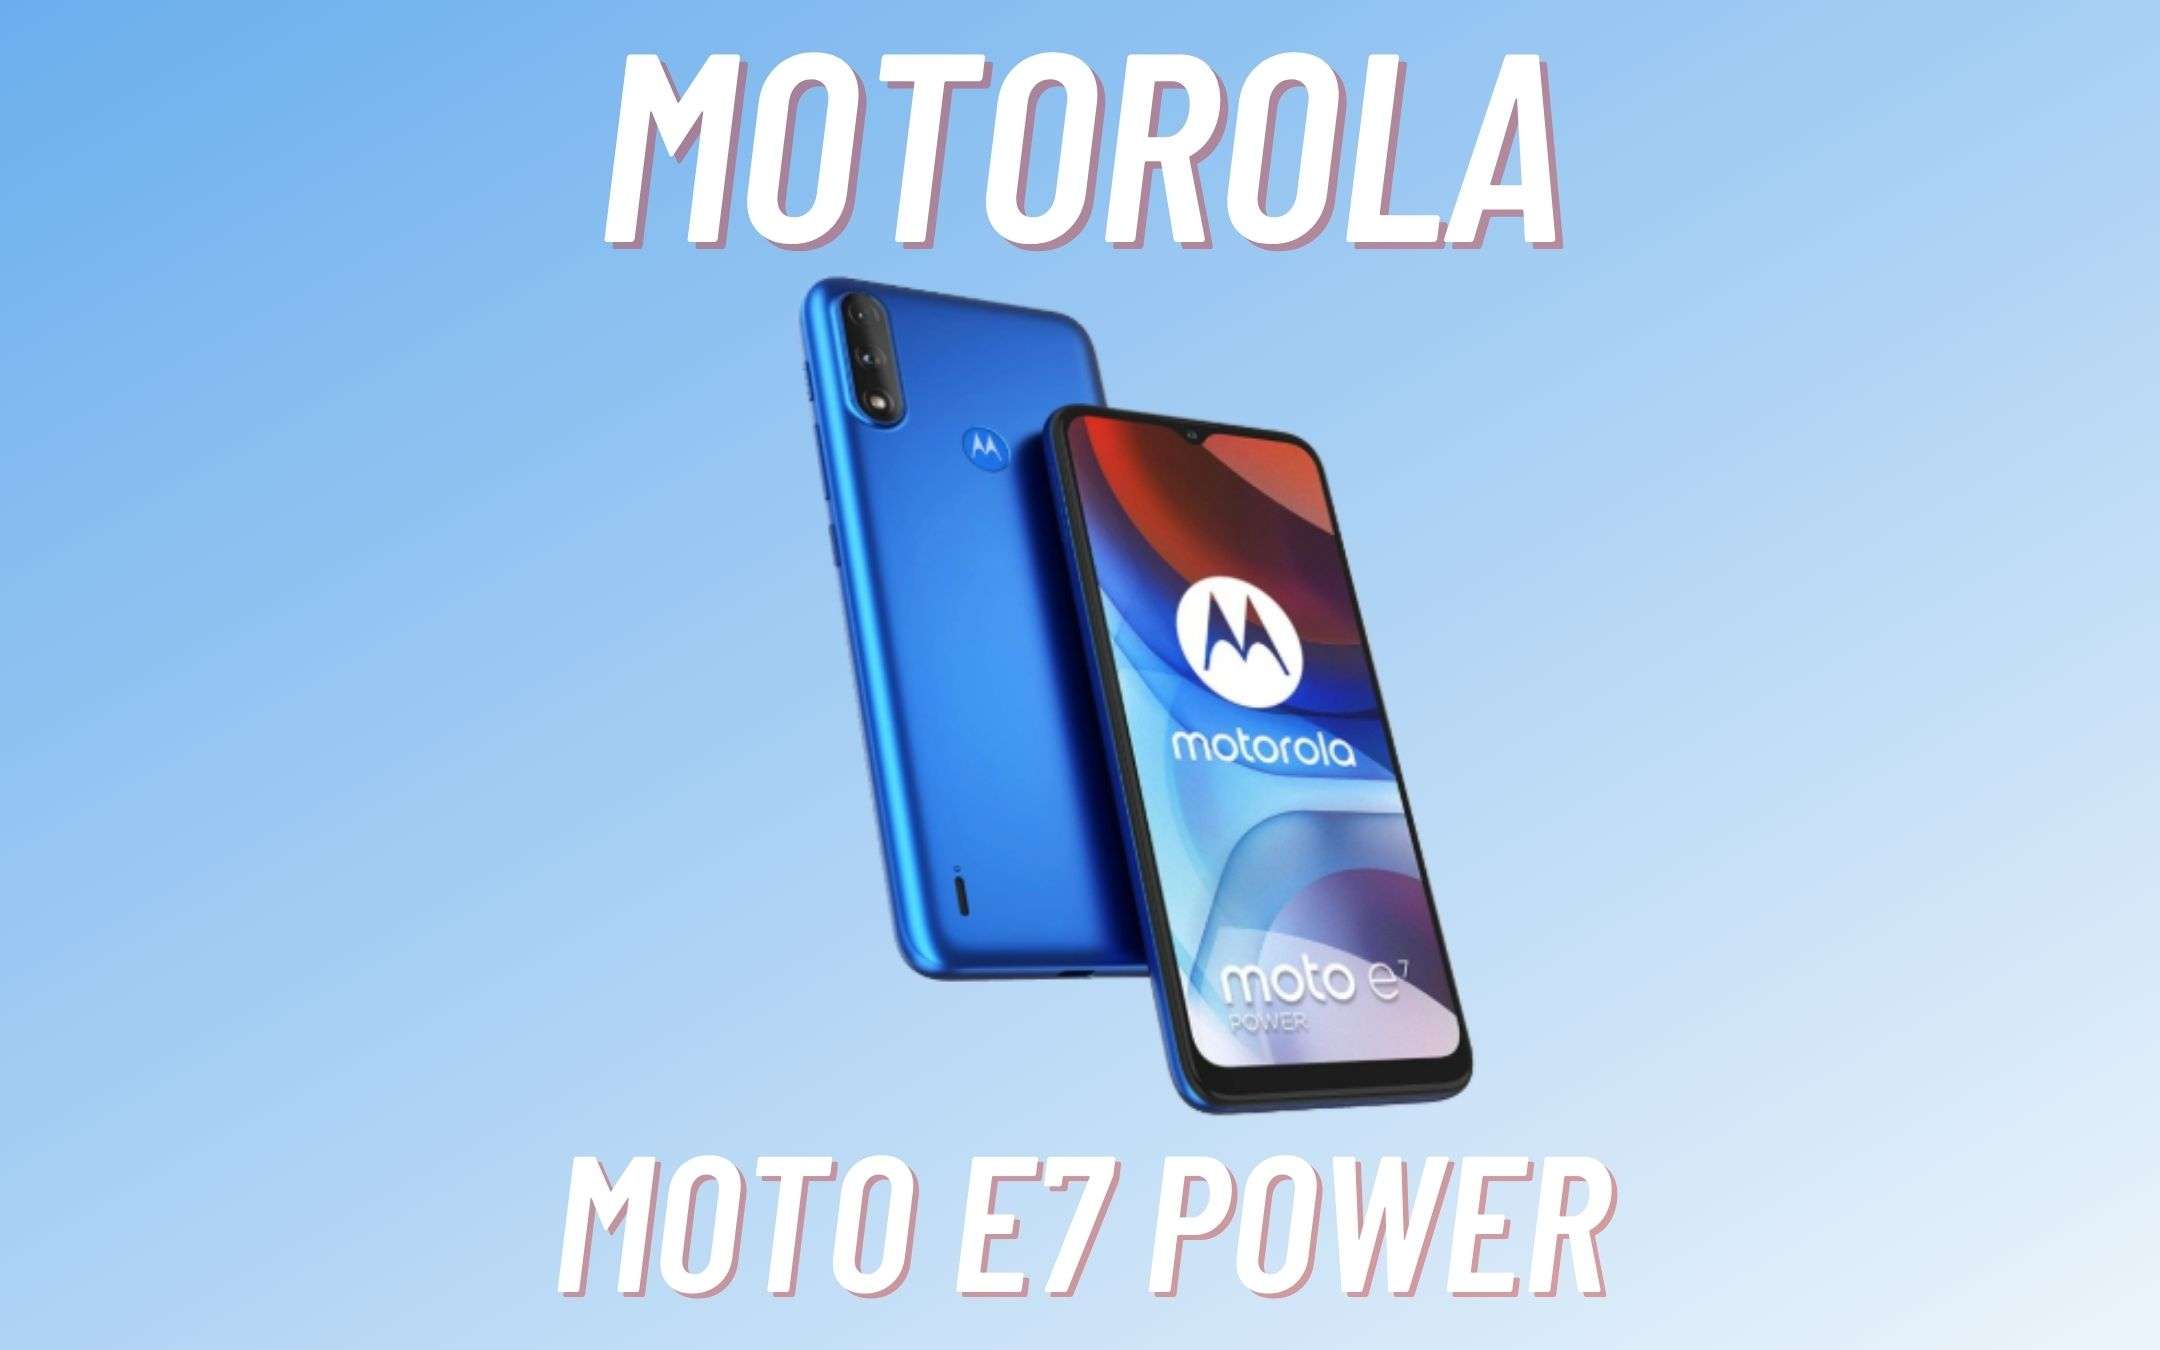 Motorola E7 Power: già disponibile, spedizione GRATIS